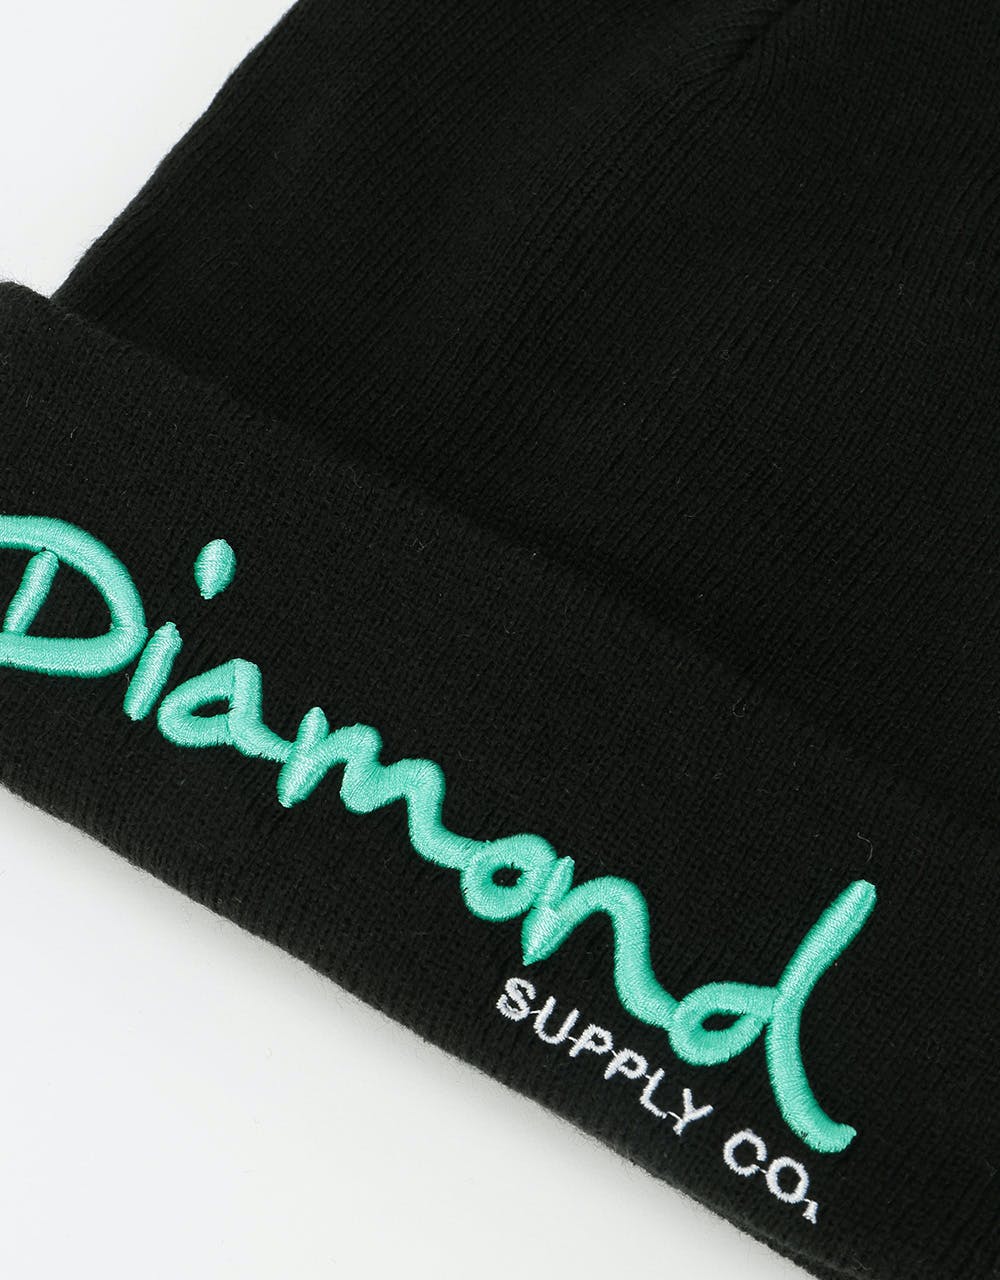 Diamond Supply Co. OG Script Beanie - Black